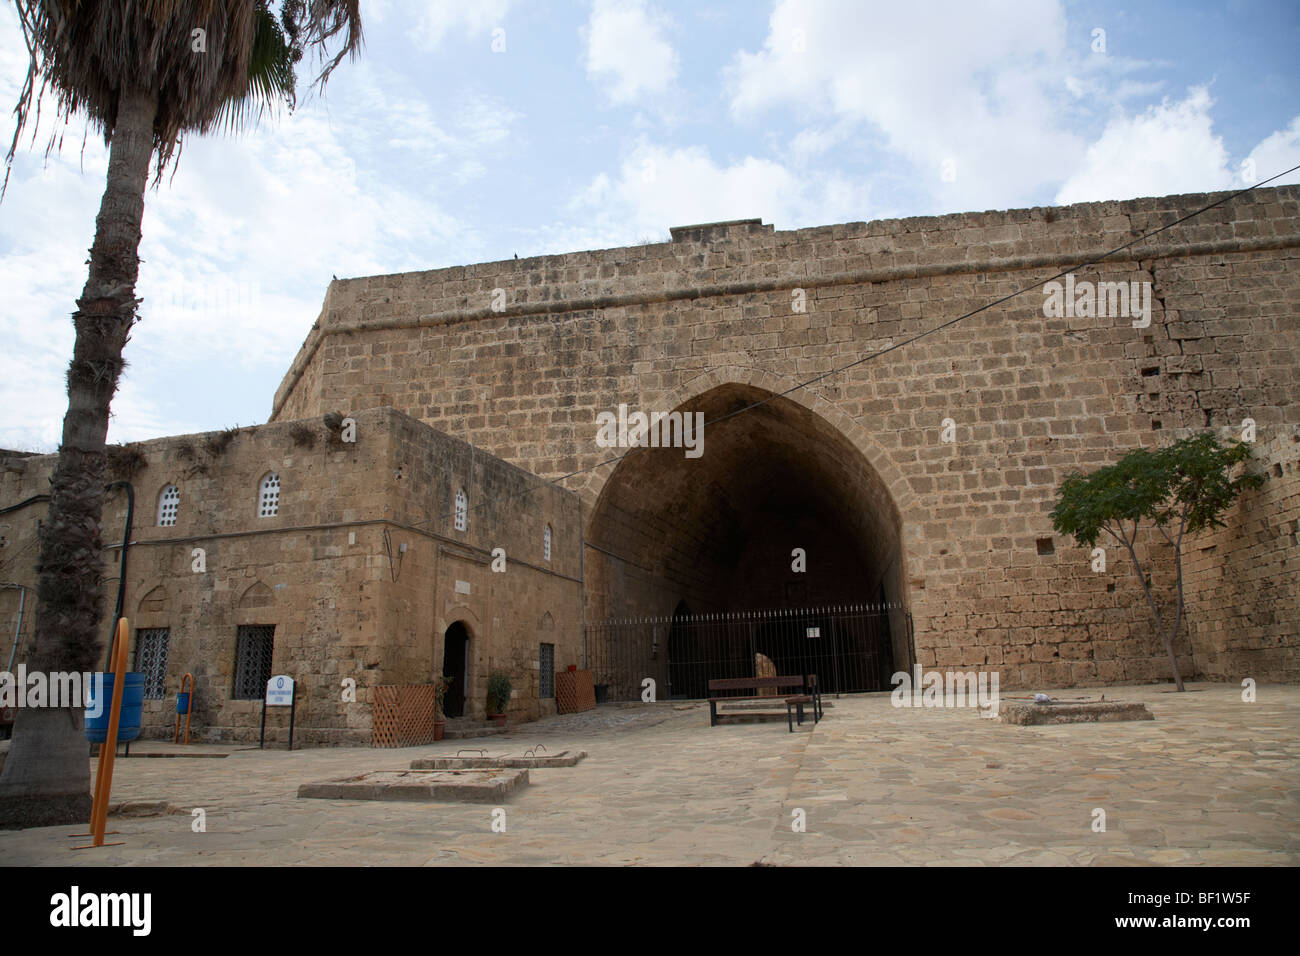 La porta di limisso la terra antica porta nelle mura della città vecchia di Famagosta repubblica turca di Cipro del nord Foto Stock